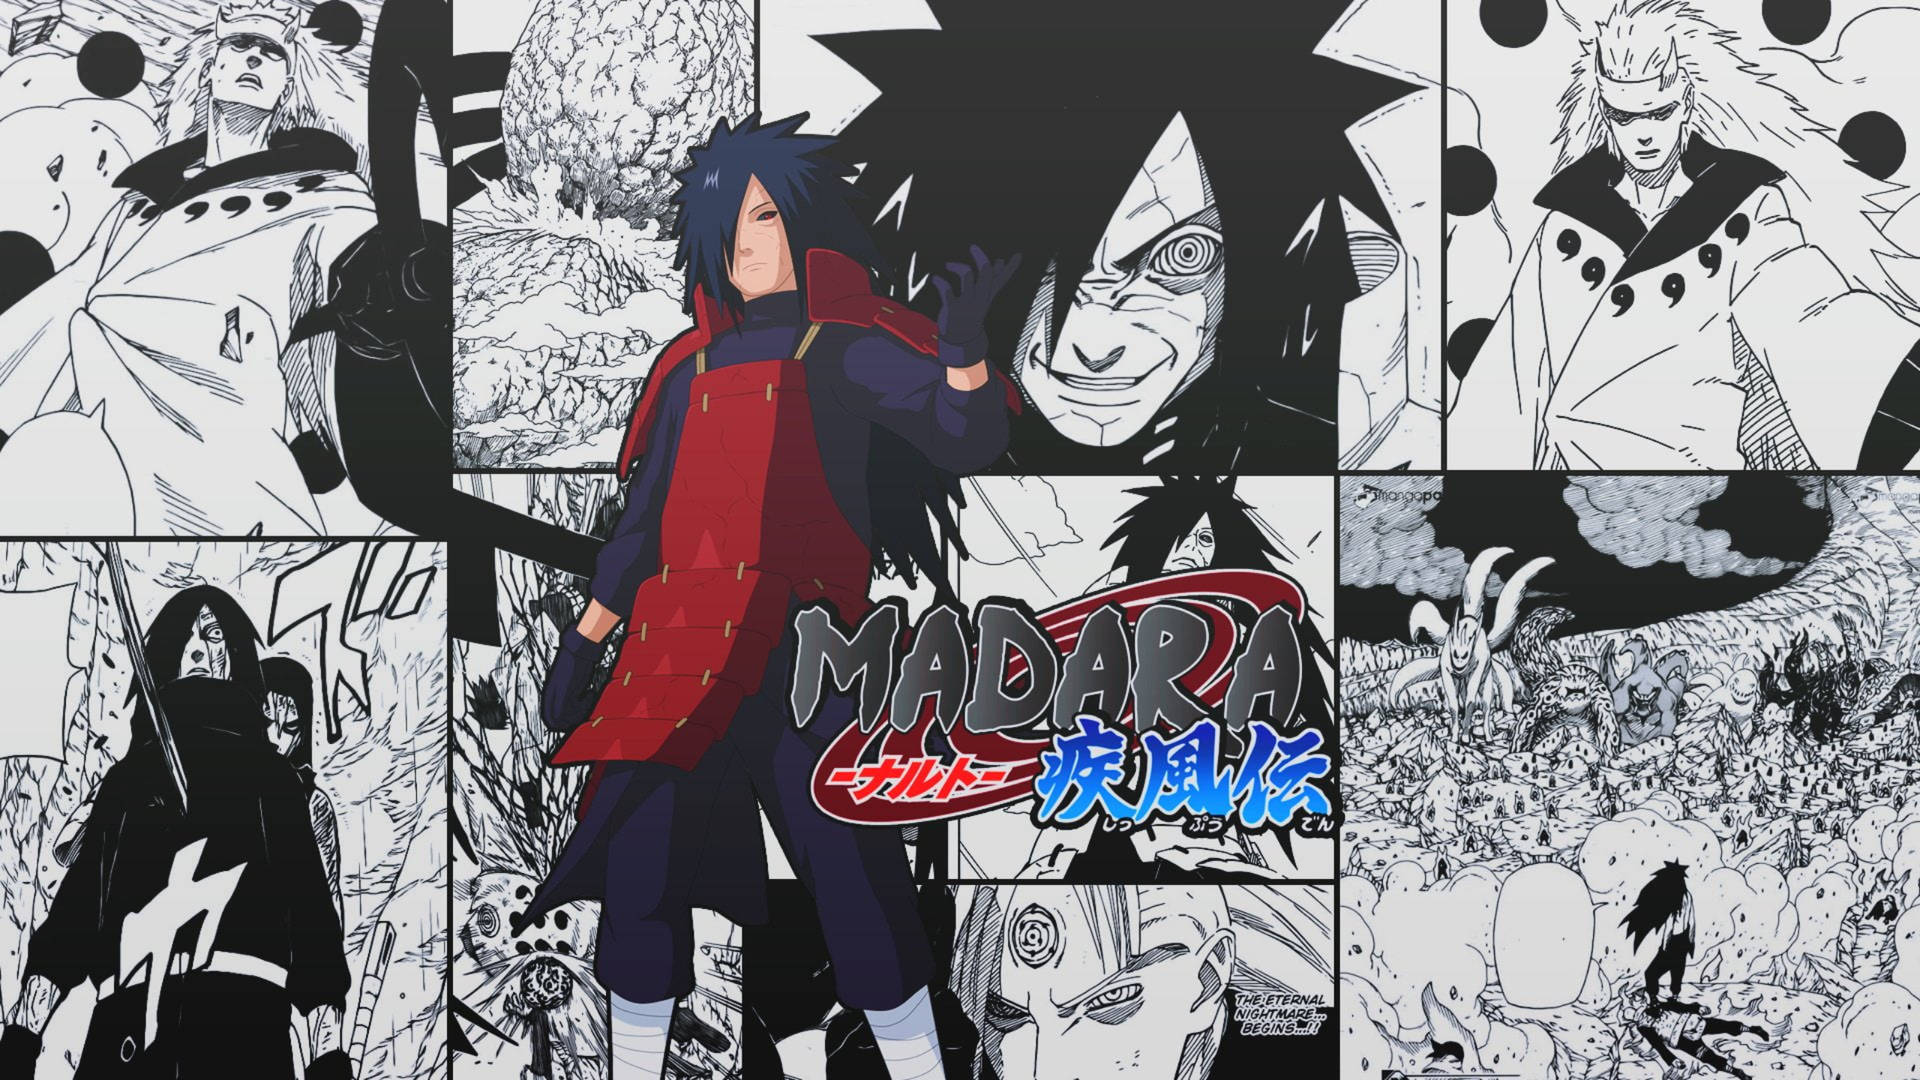 Madara Manga Cover Wallpaper